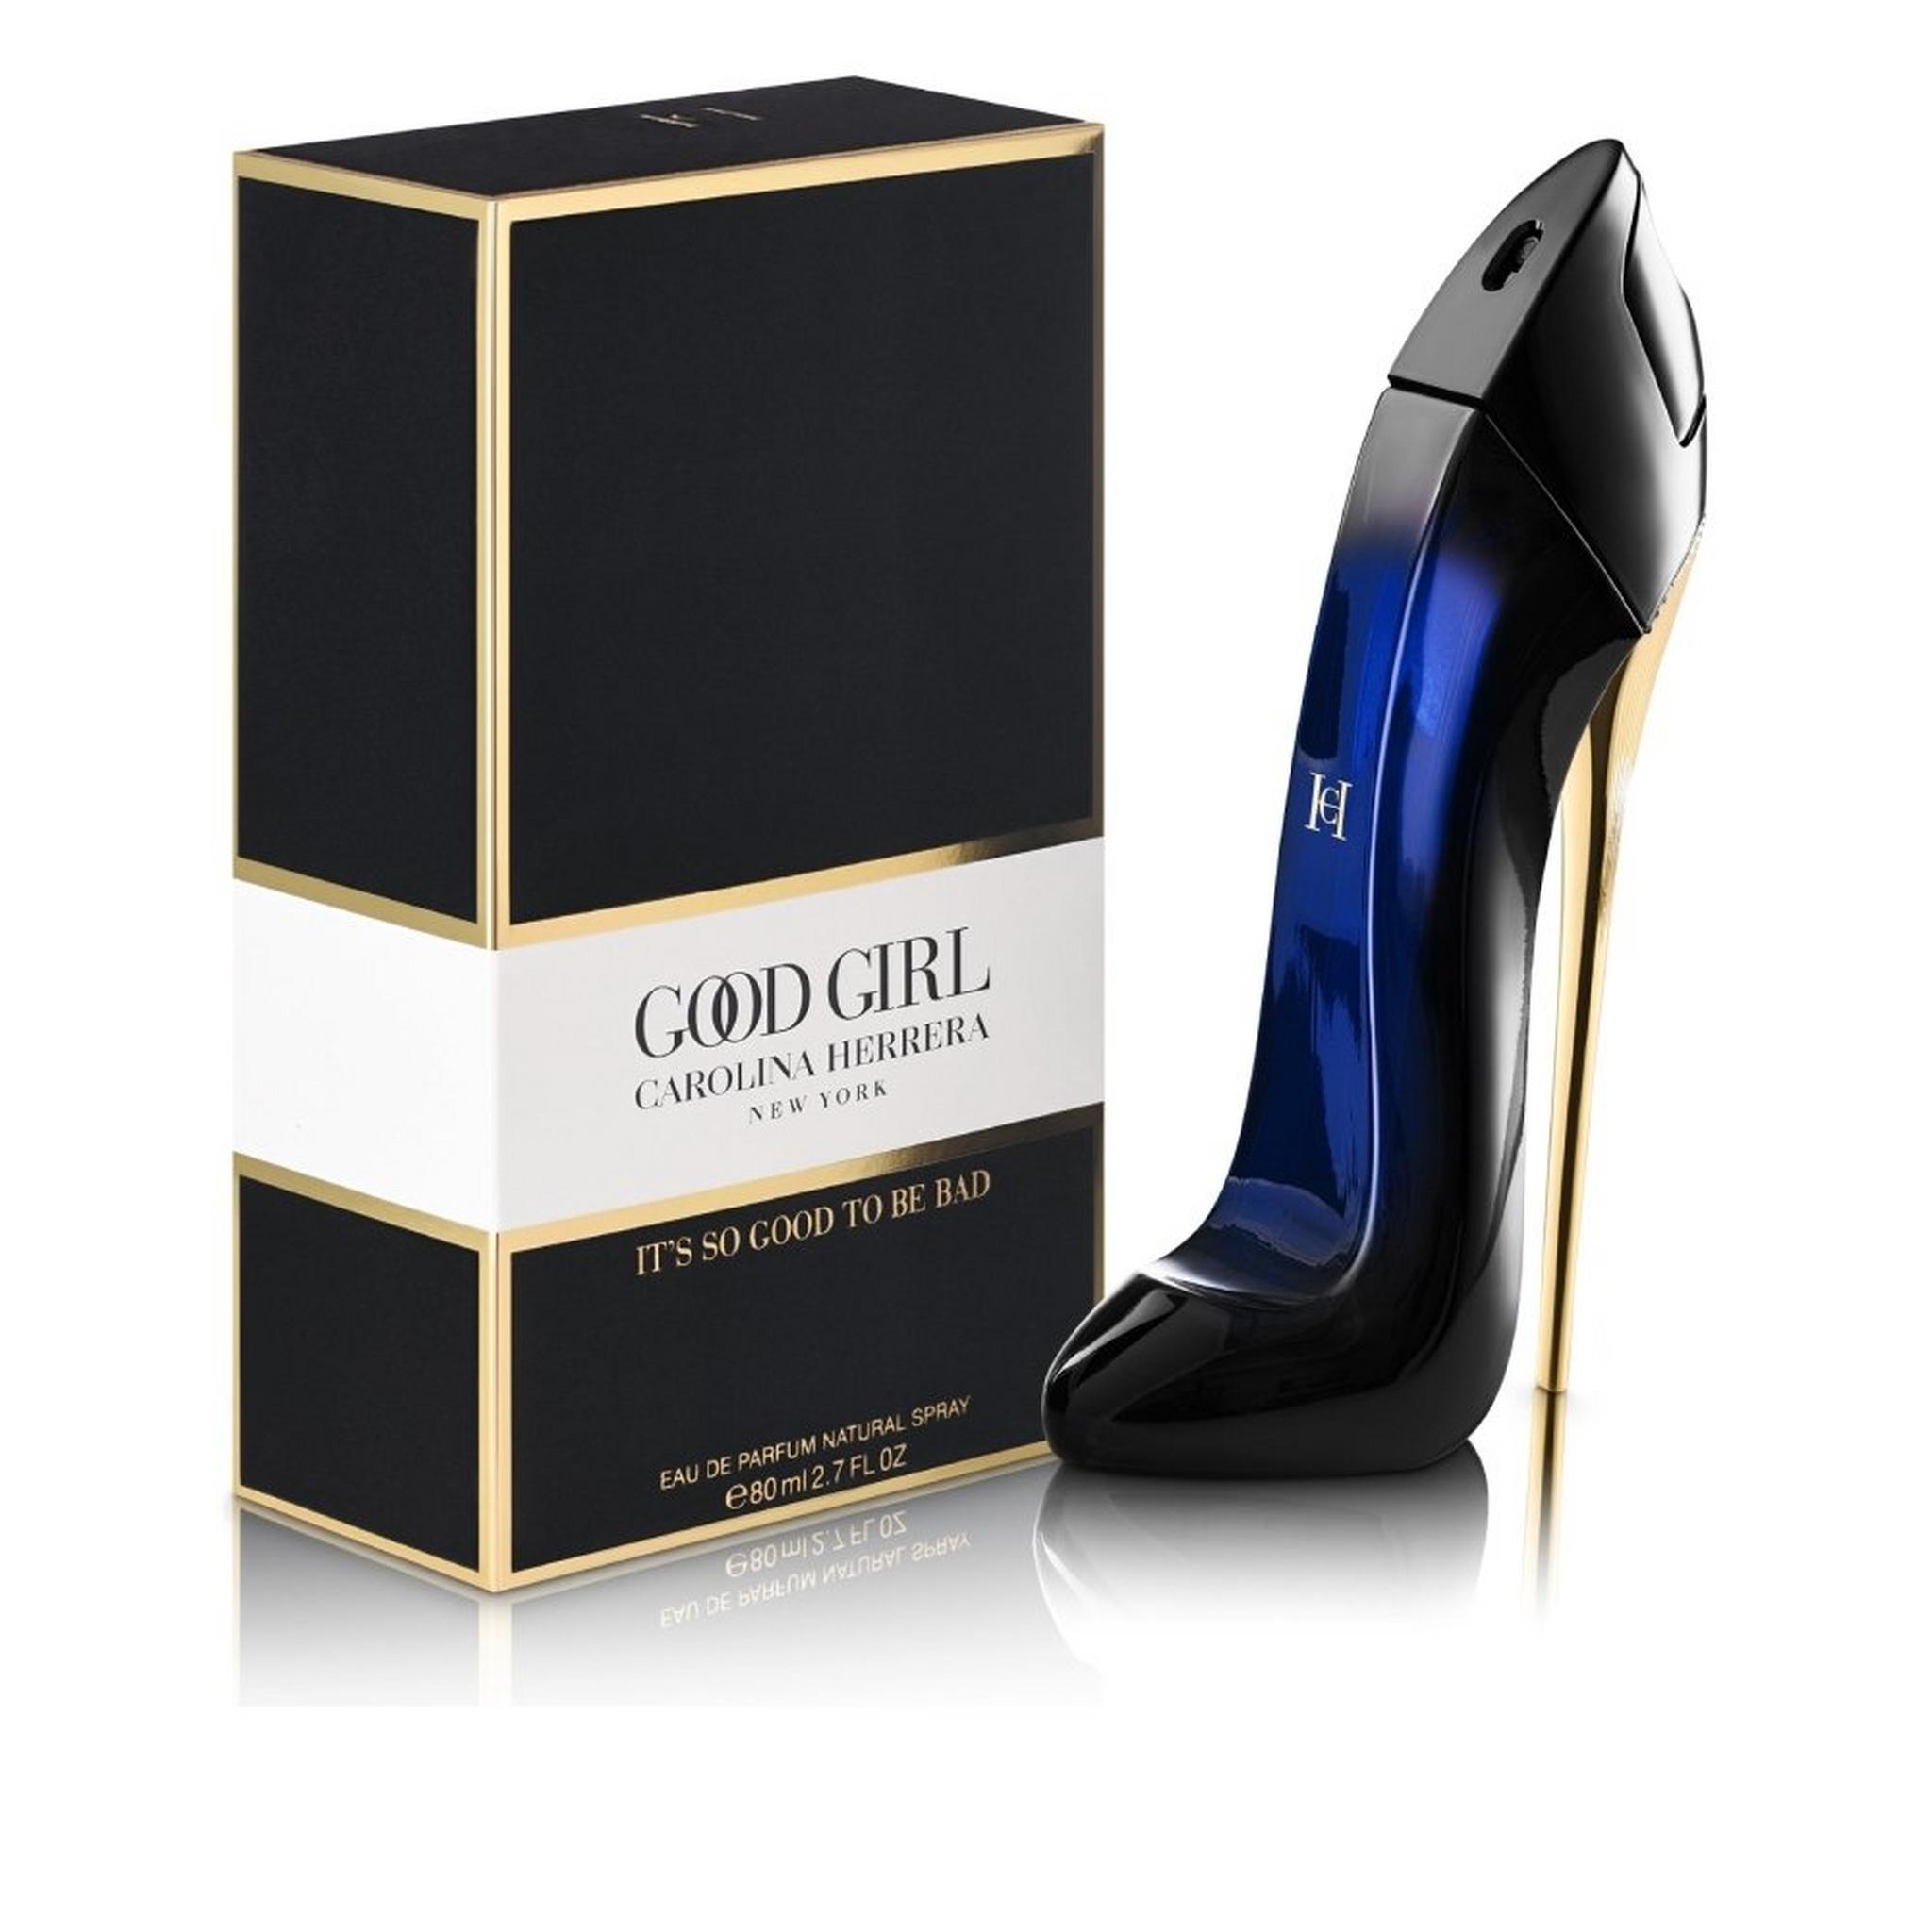 Carolina Herrera Good Girl for Women Eau de Parfum 80ml